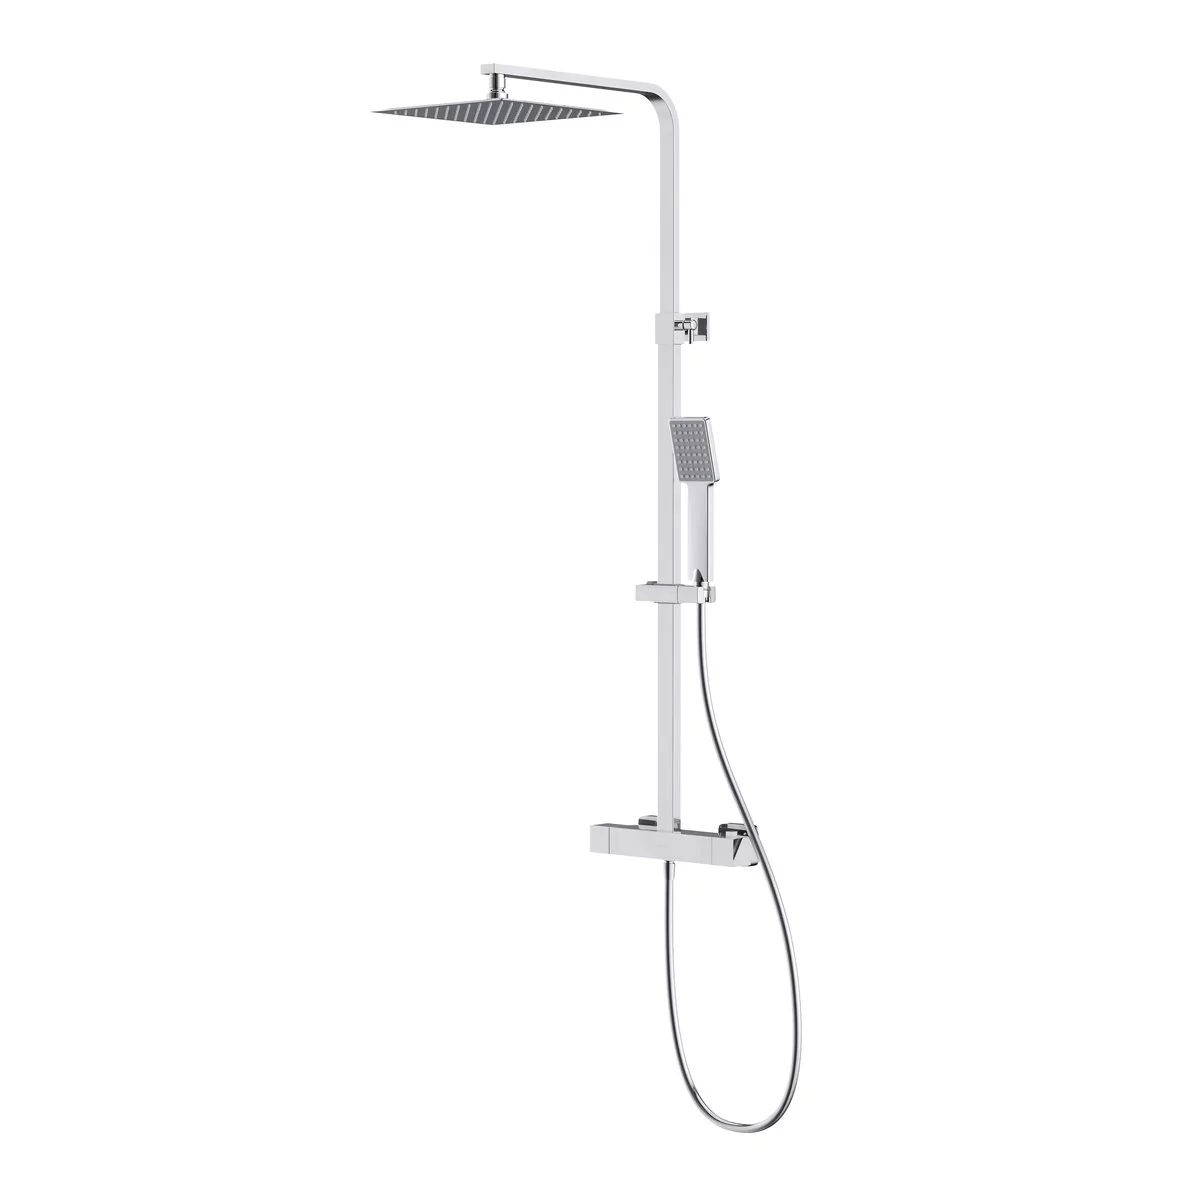 Cersanit Cersanit City zestaw prysznicowy ścienny termostatyczny z deszczownicą chrom S951-341 S951-341